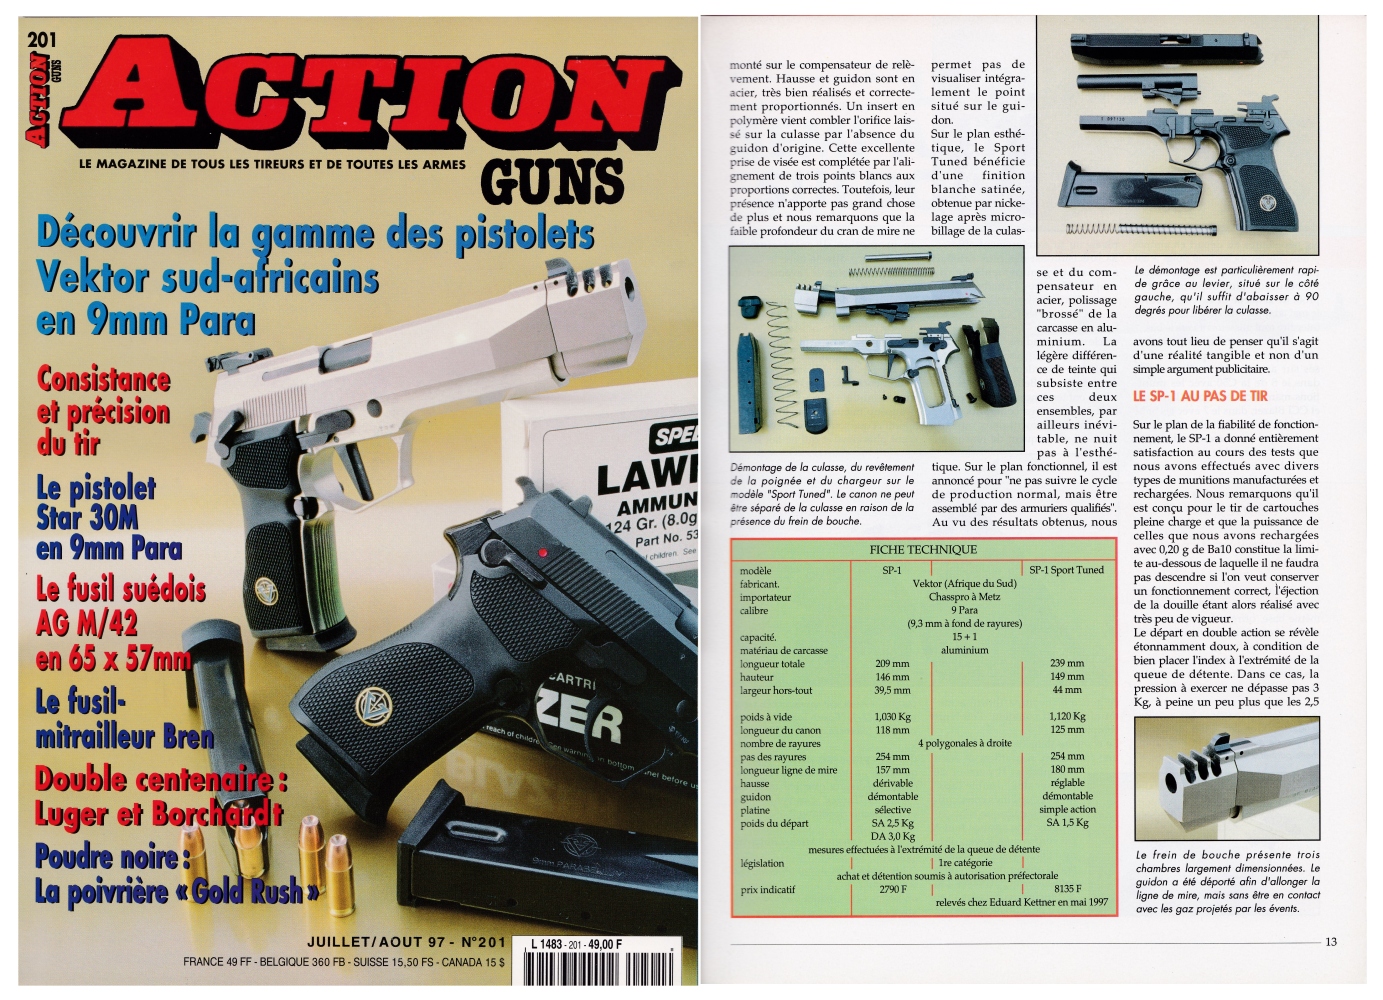 Le banc d’essai des pistolets Vektor SP-1 a été publié sur 7 pages dans le magazine Action Guns n°201 (juillet-août 1997)